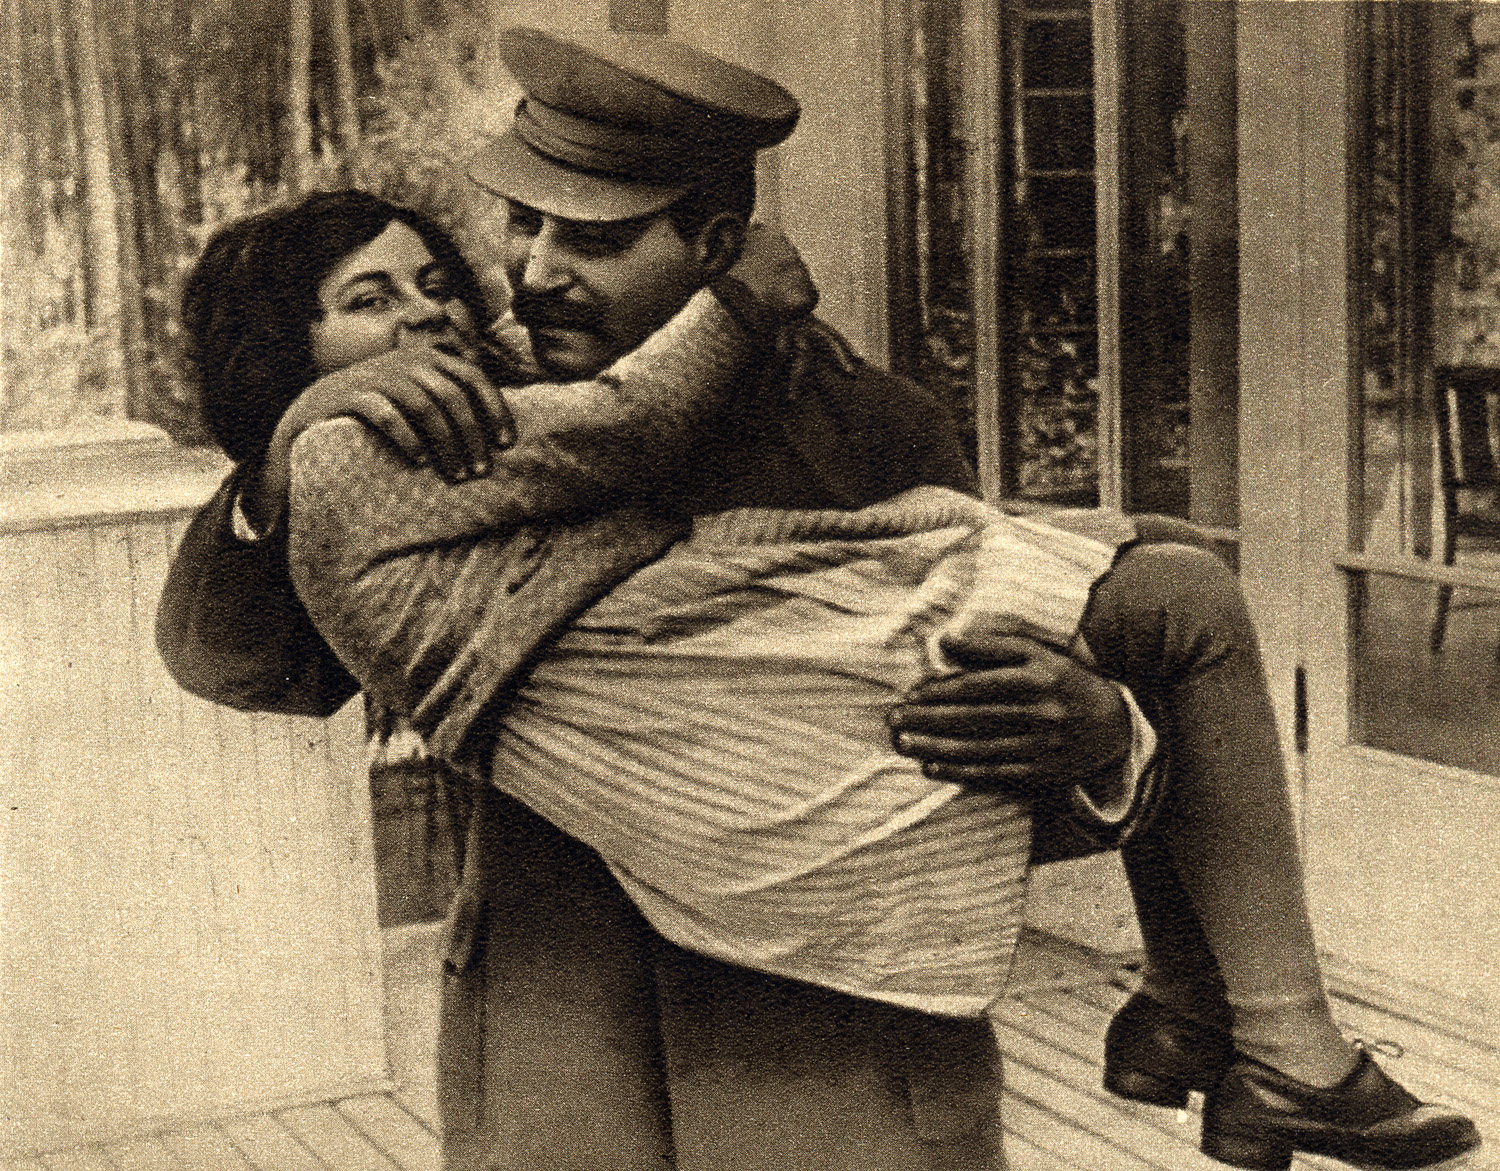 http://upload.wikimedia.org/wikipedia/commons/7/79/Joseph_Stalin_with_daughter_Svetlana%2C_1935.jpg